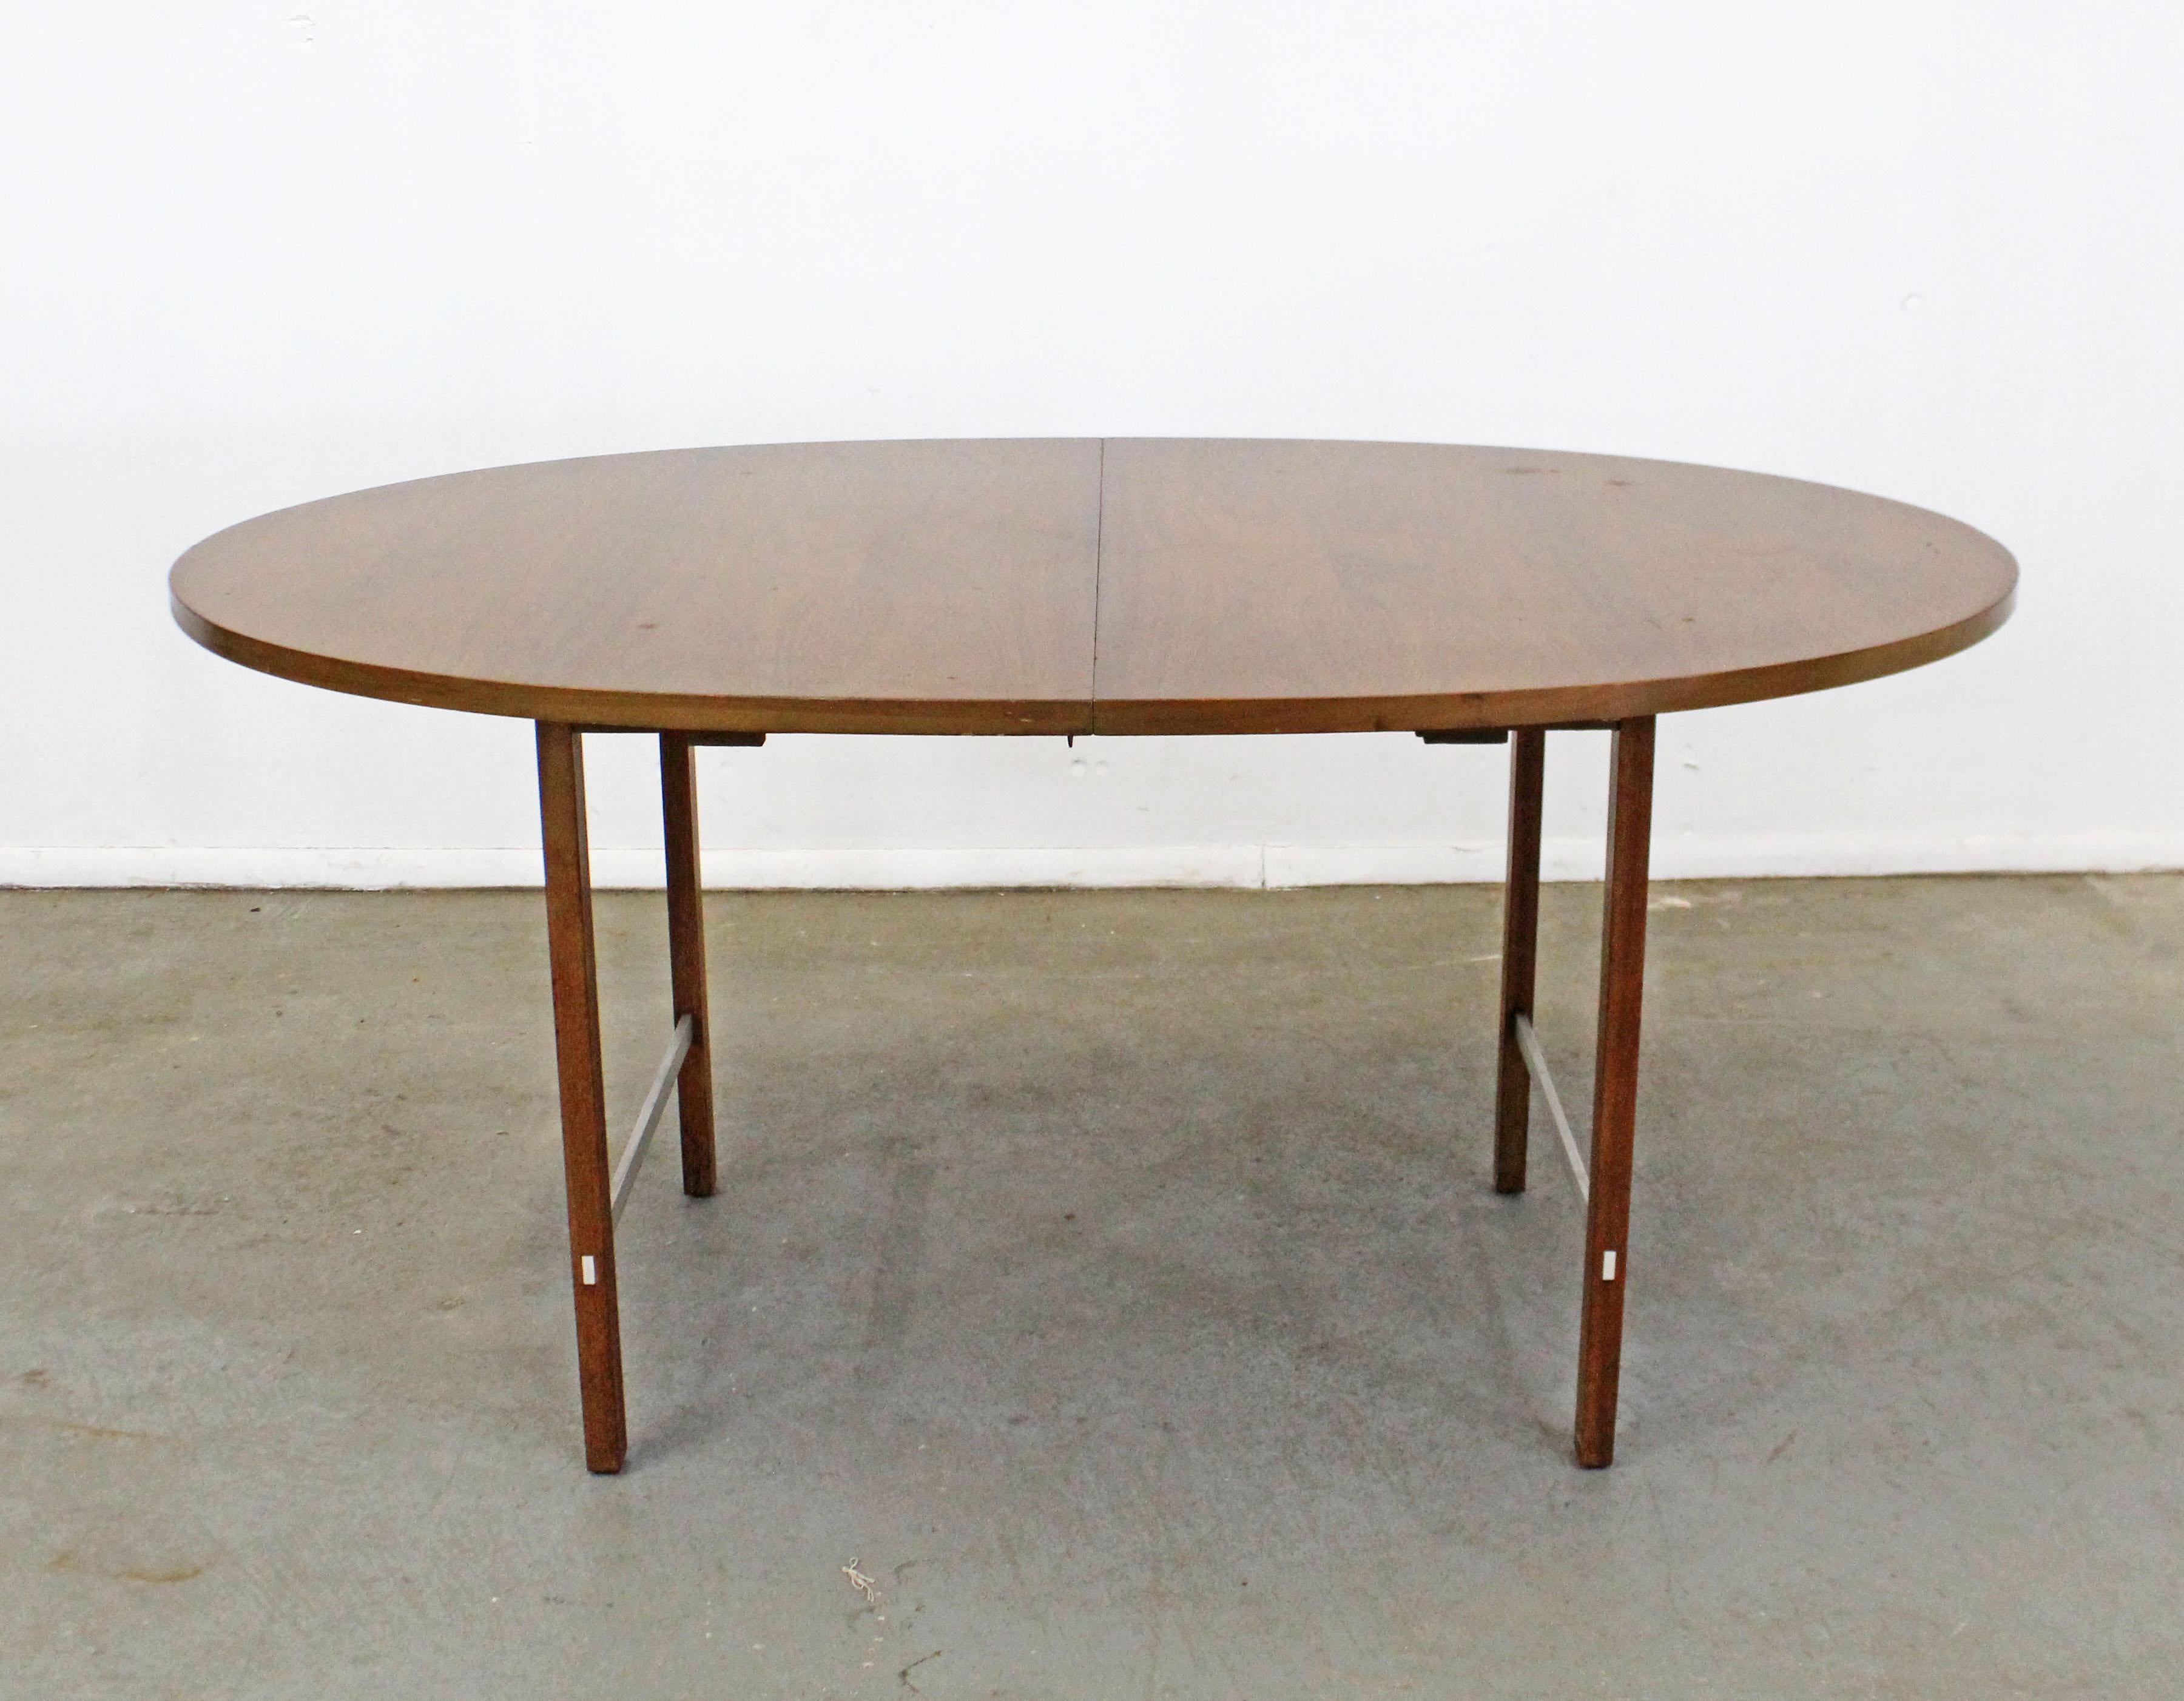 Nous vous proposons une table à manger vintage de style moderne du milieu du siècle, conçue par Paul McCobb pour la collection Irwin de Calvin. La table est fabriquée en noyer, avec un plateau ovale et des renforts en aluminium sur les pieds. Elle